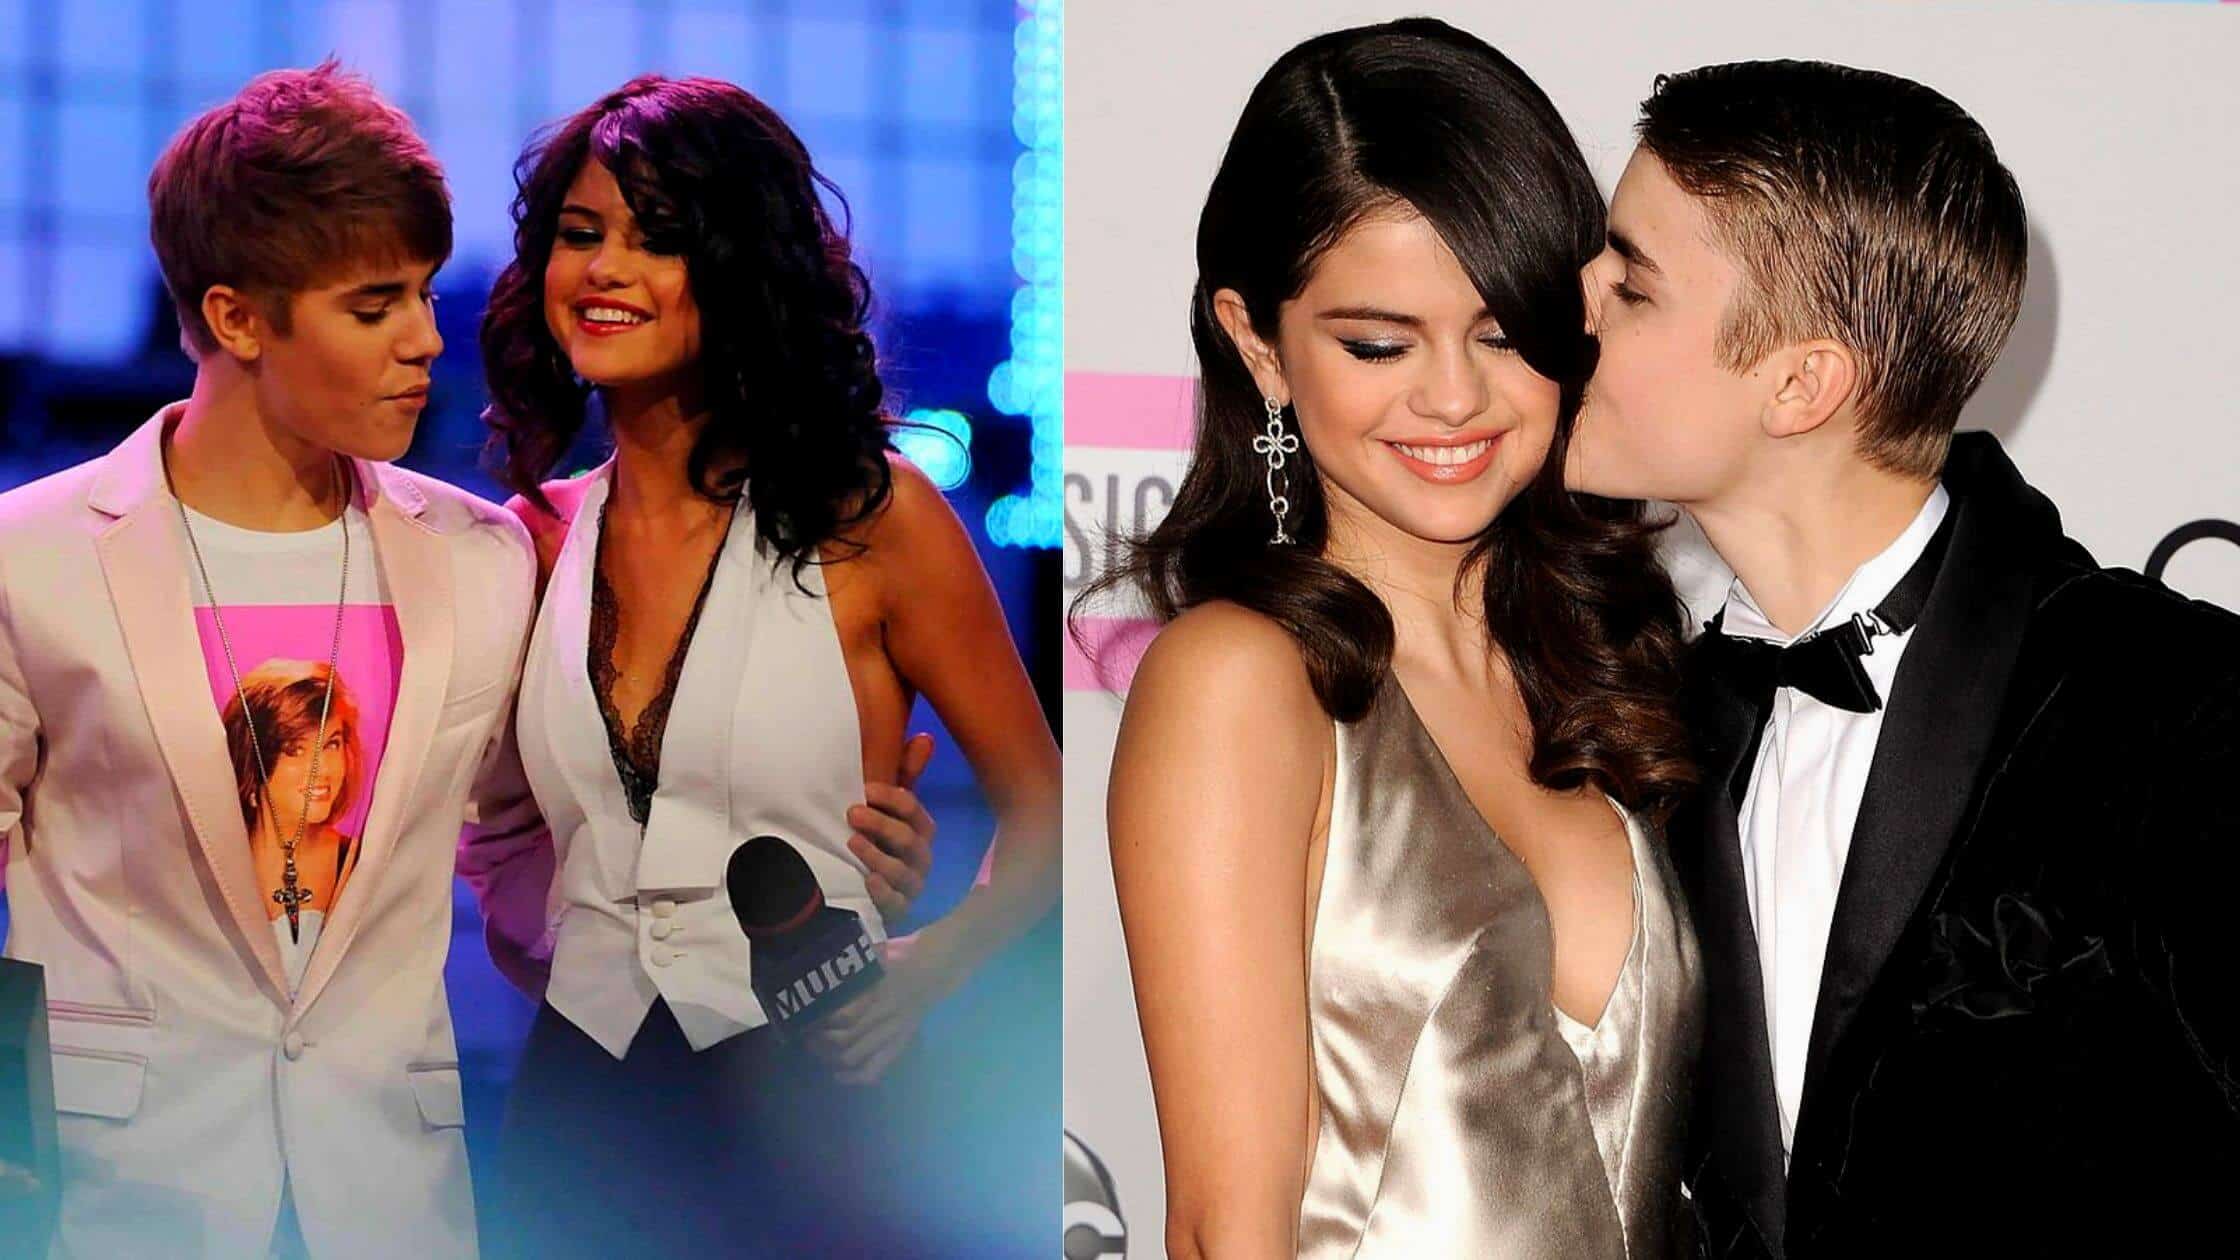 TikTok Claimed Selena Gomez Was Always Skinny When She Dated Justin Bieber 